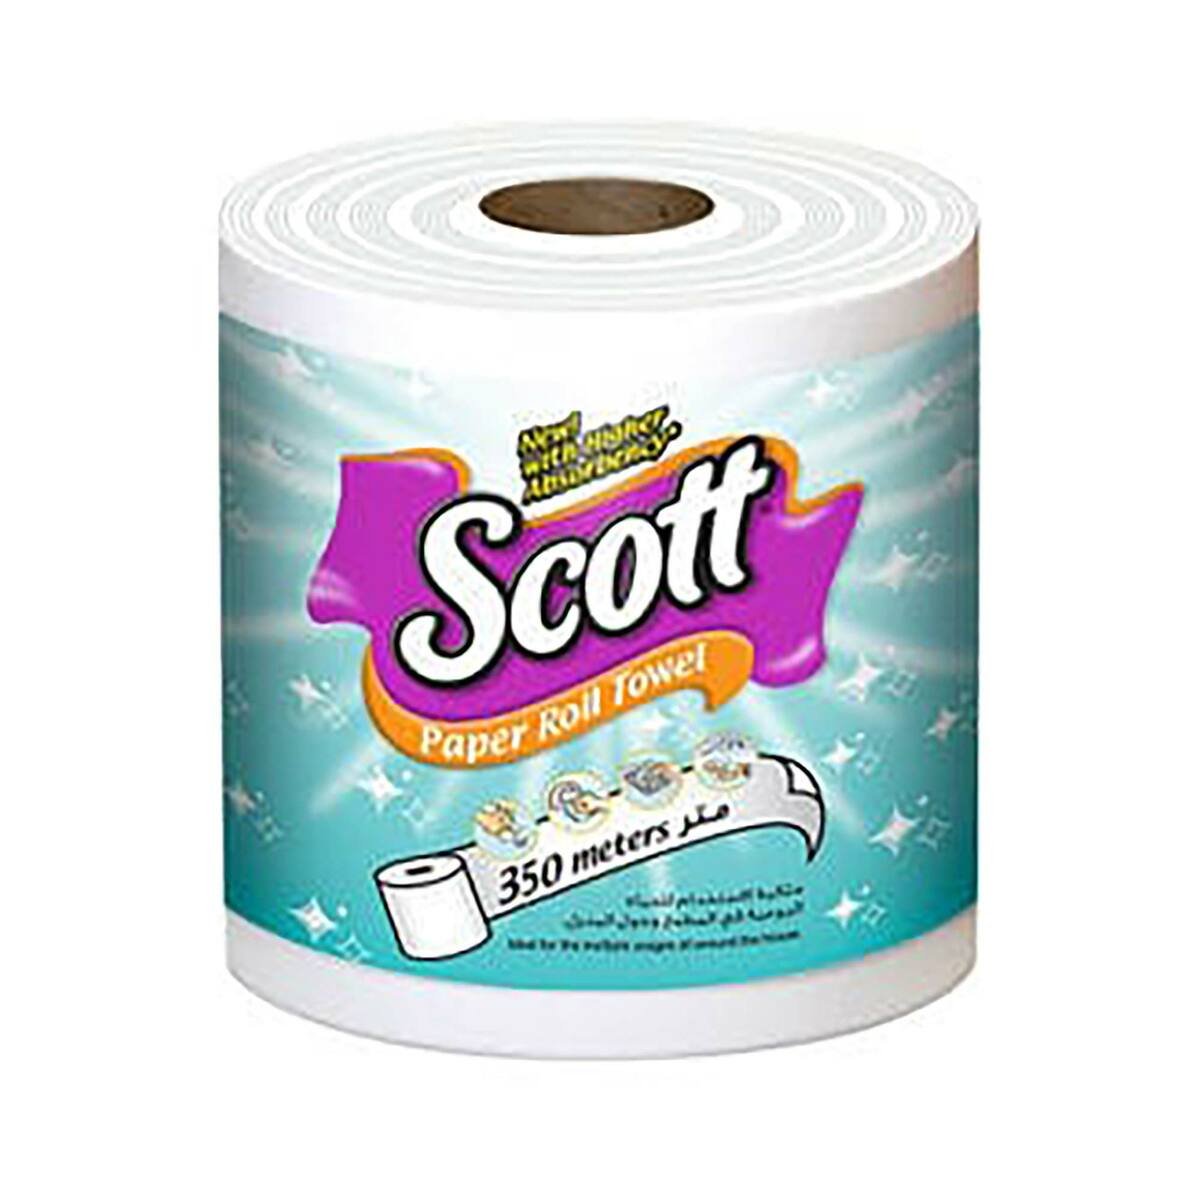 Scott Paper Roll Towel 350m